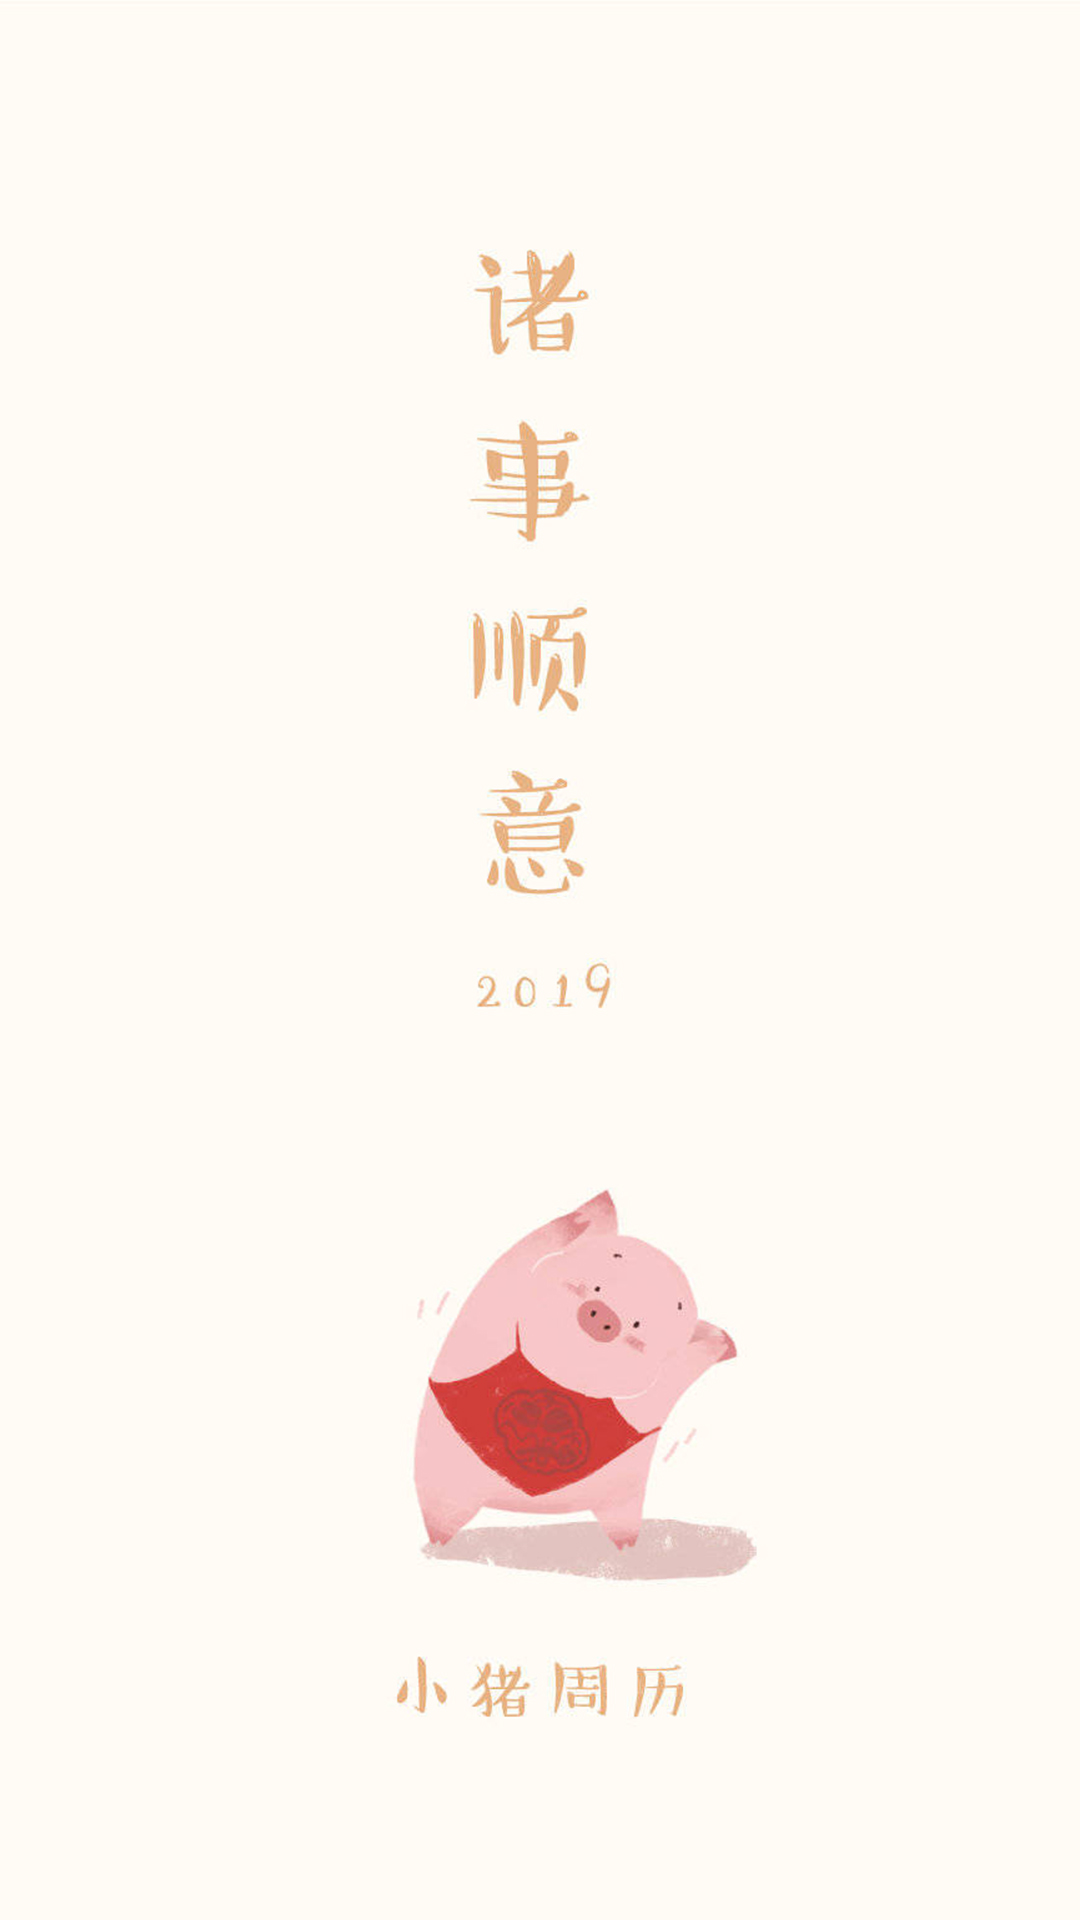 猪年送祝福,动漫小猪的壁纸来一套,祝大家新年快乐!